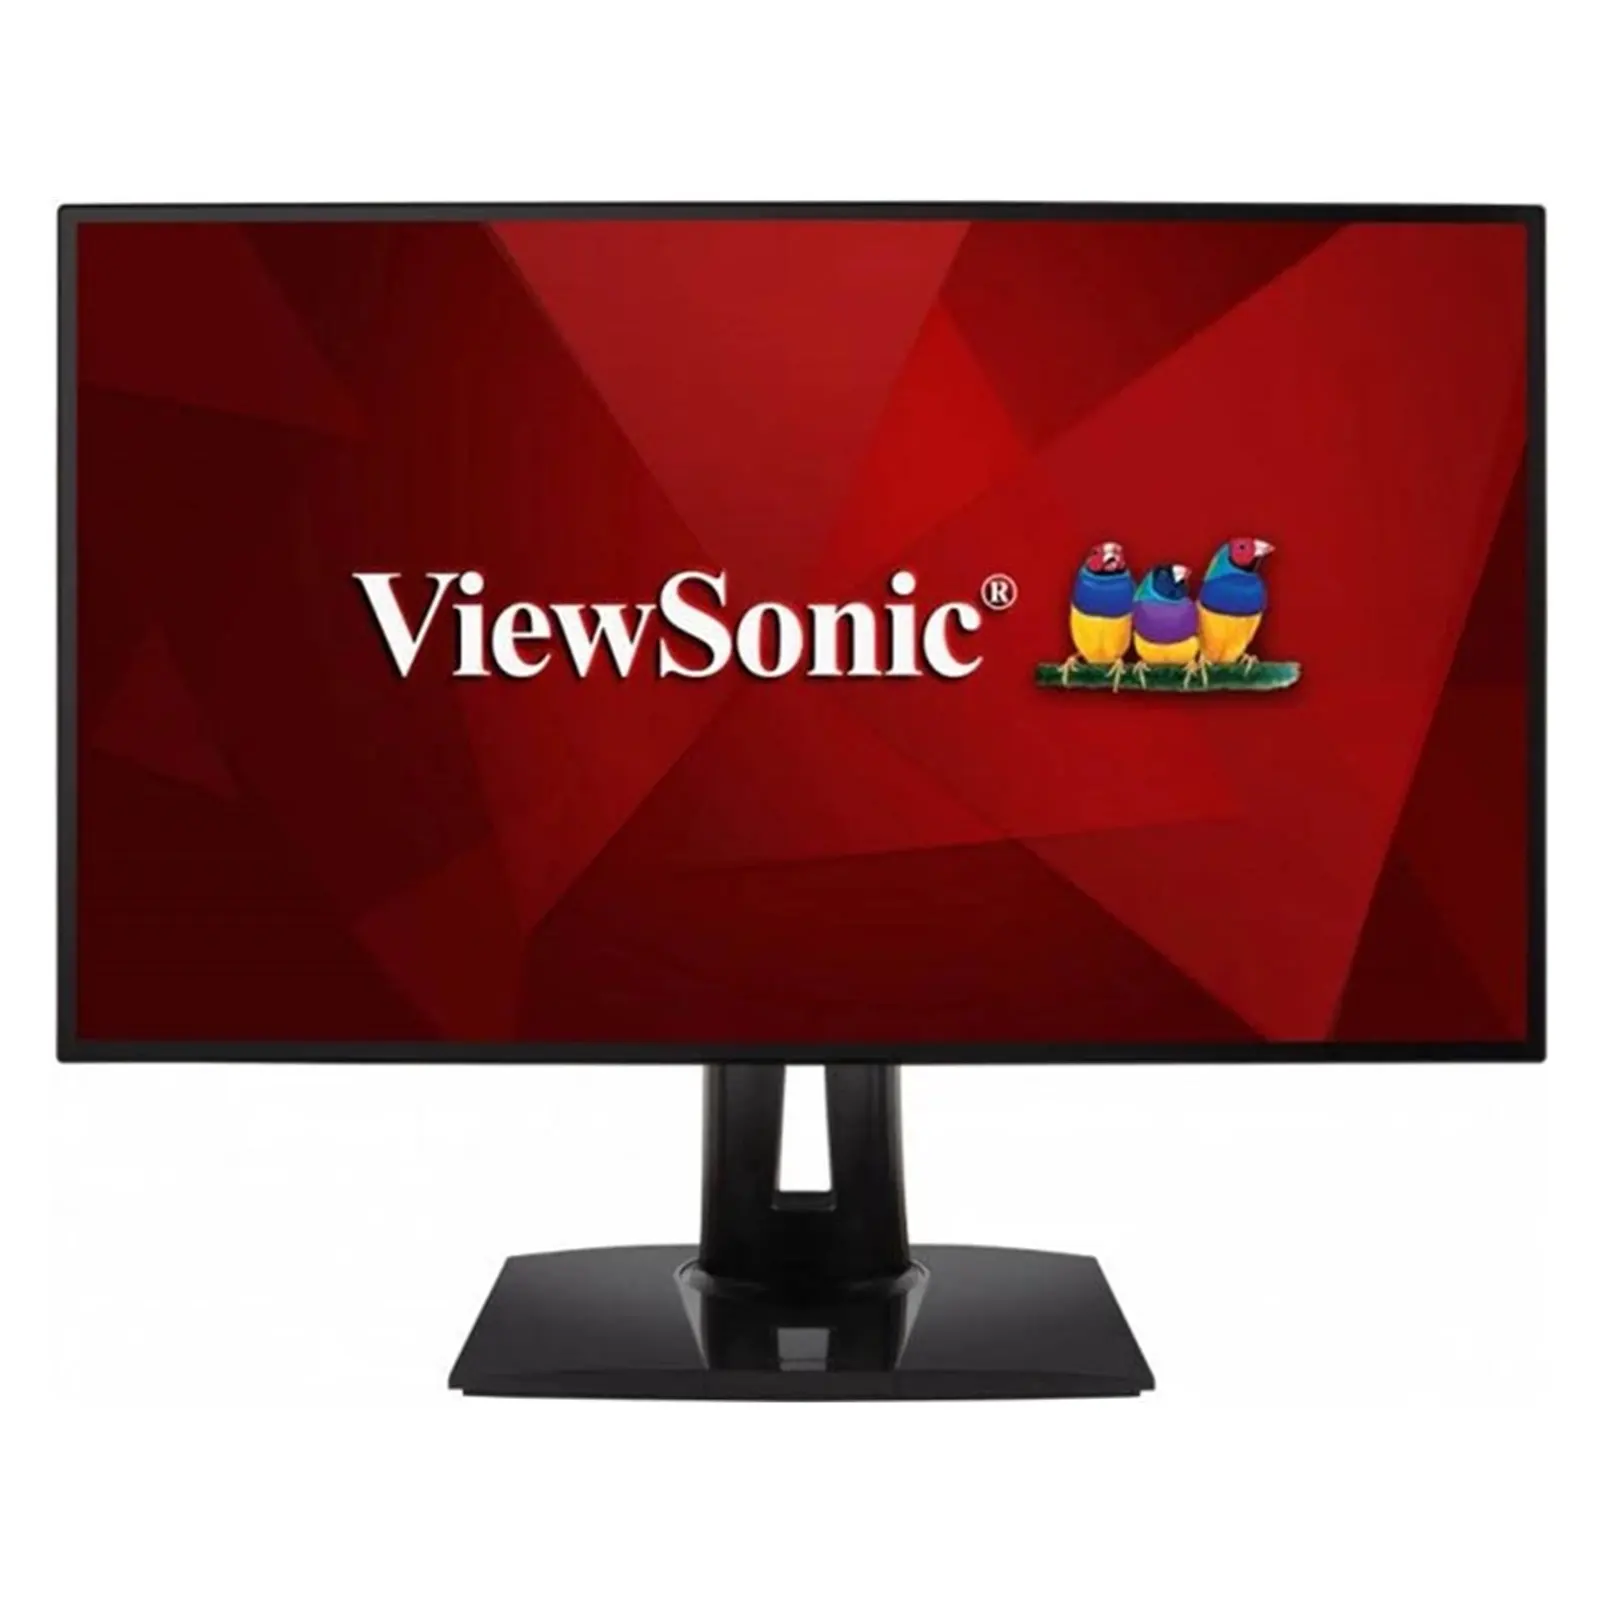 Viewsonic VP2768 27-Inch Professional IPS Monitor, 100% sRGB, 2560x1440, 60Hz, HDMIx2, DisplayPort, USB A/B, 5ms, Height Adjust, Auto Pivot, VESA